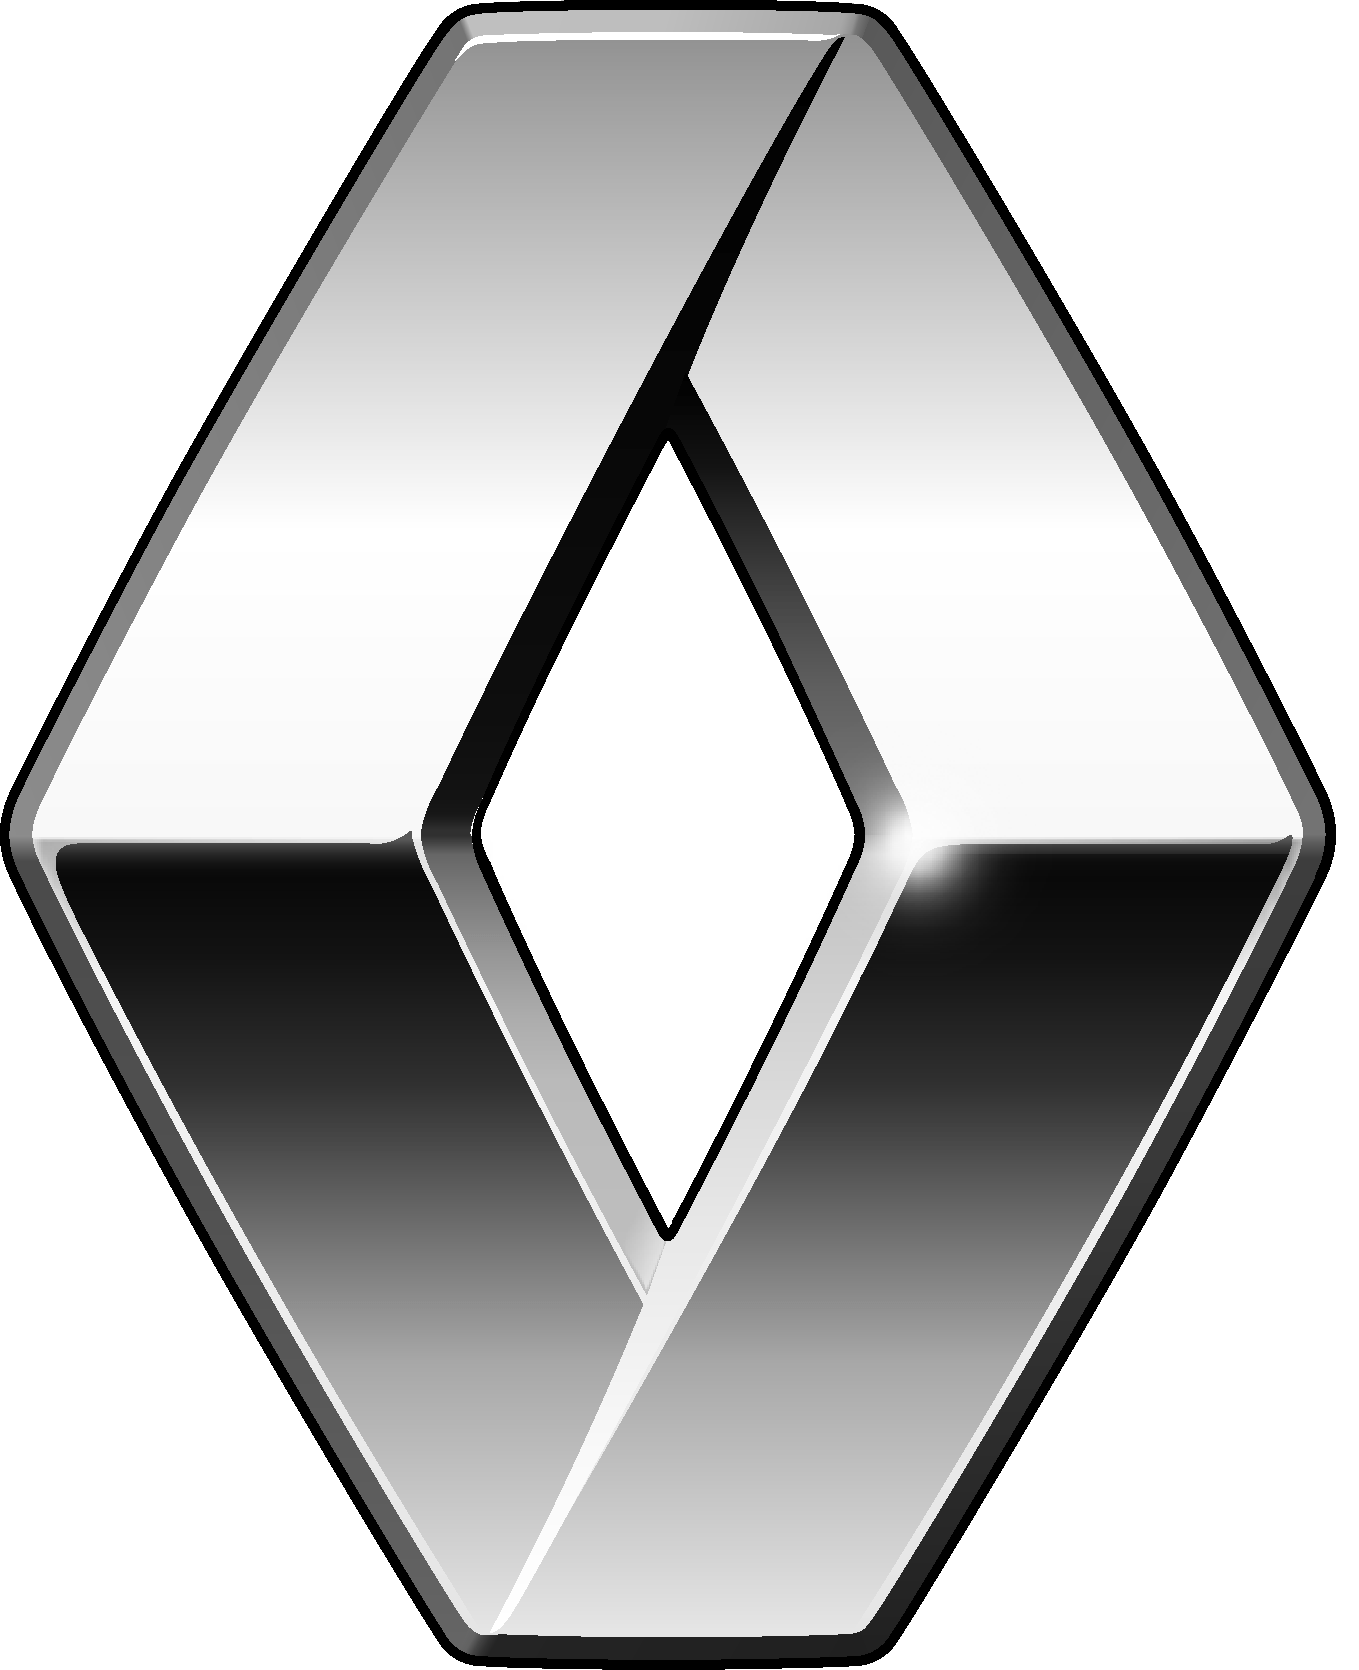 Renault Logo (2007–2015) png